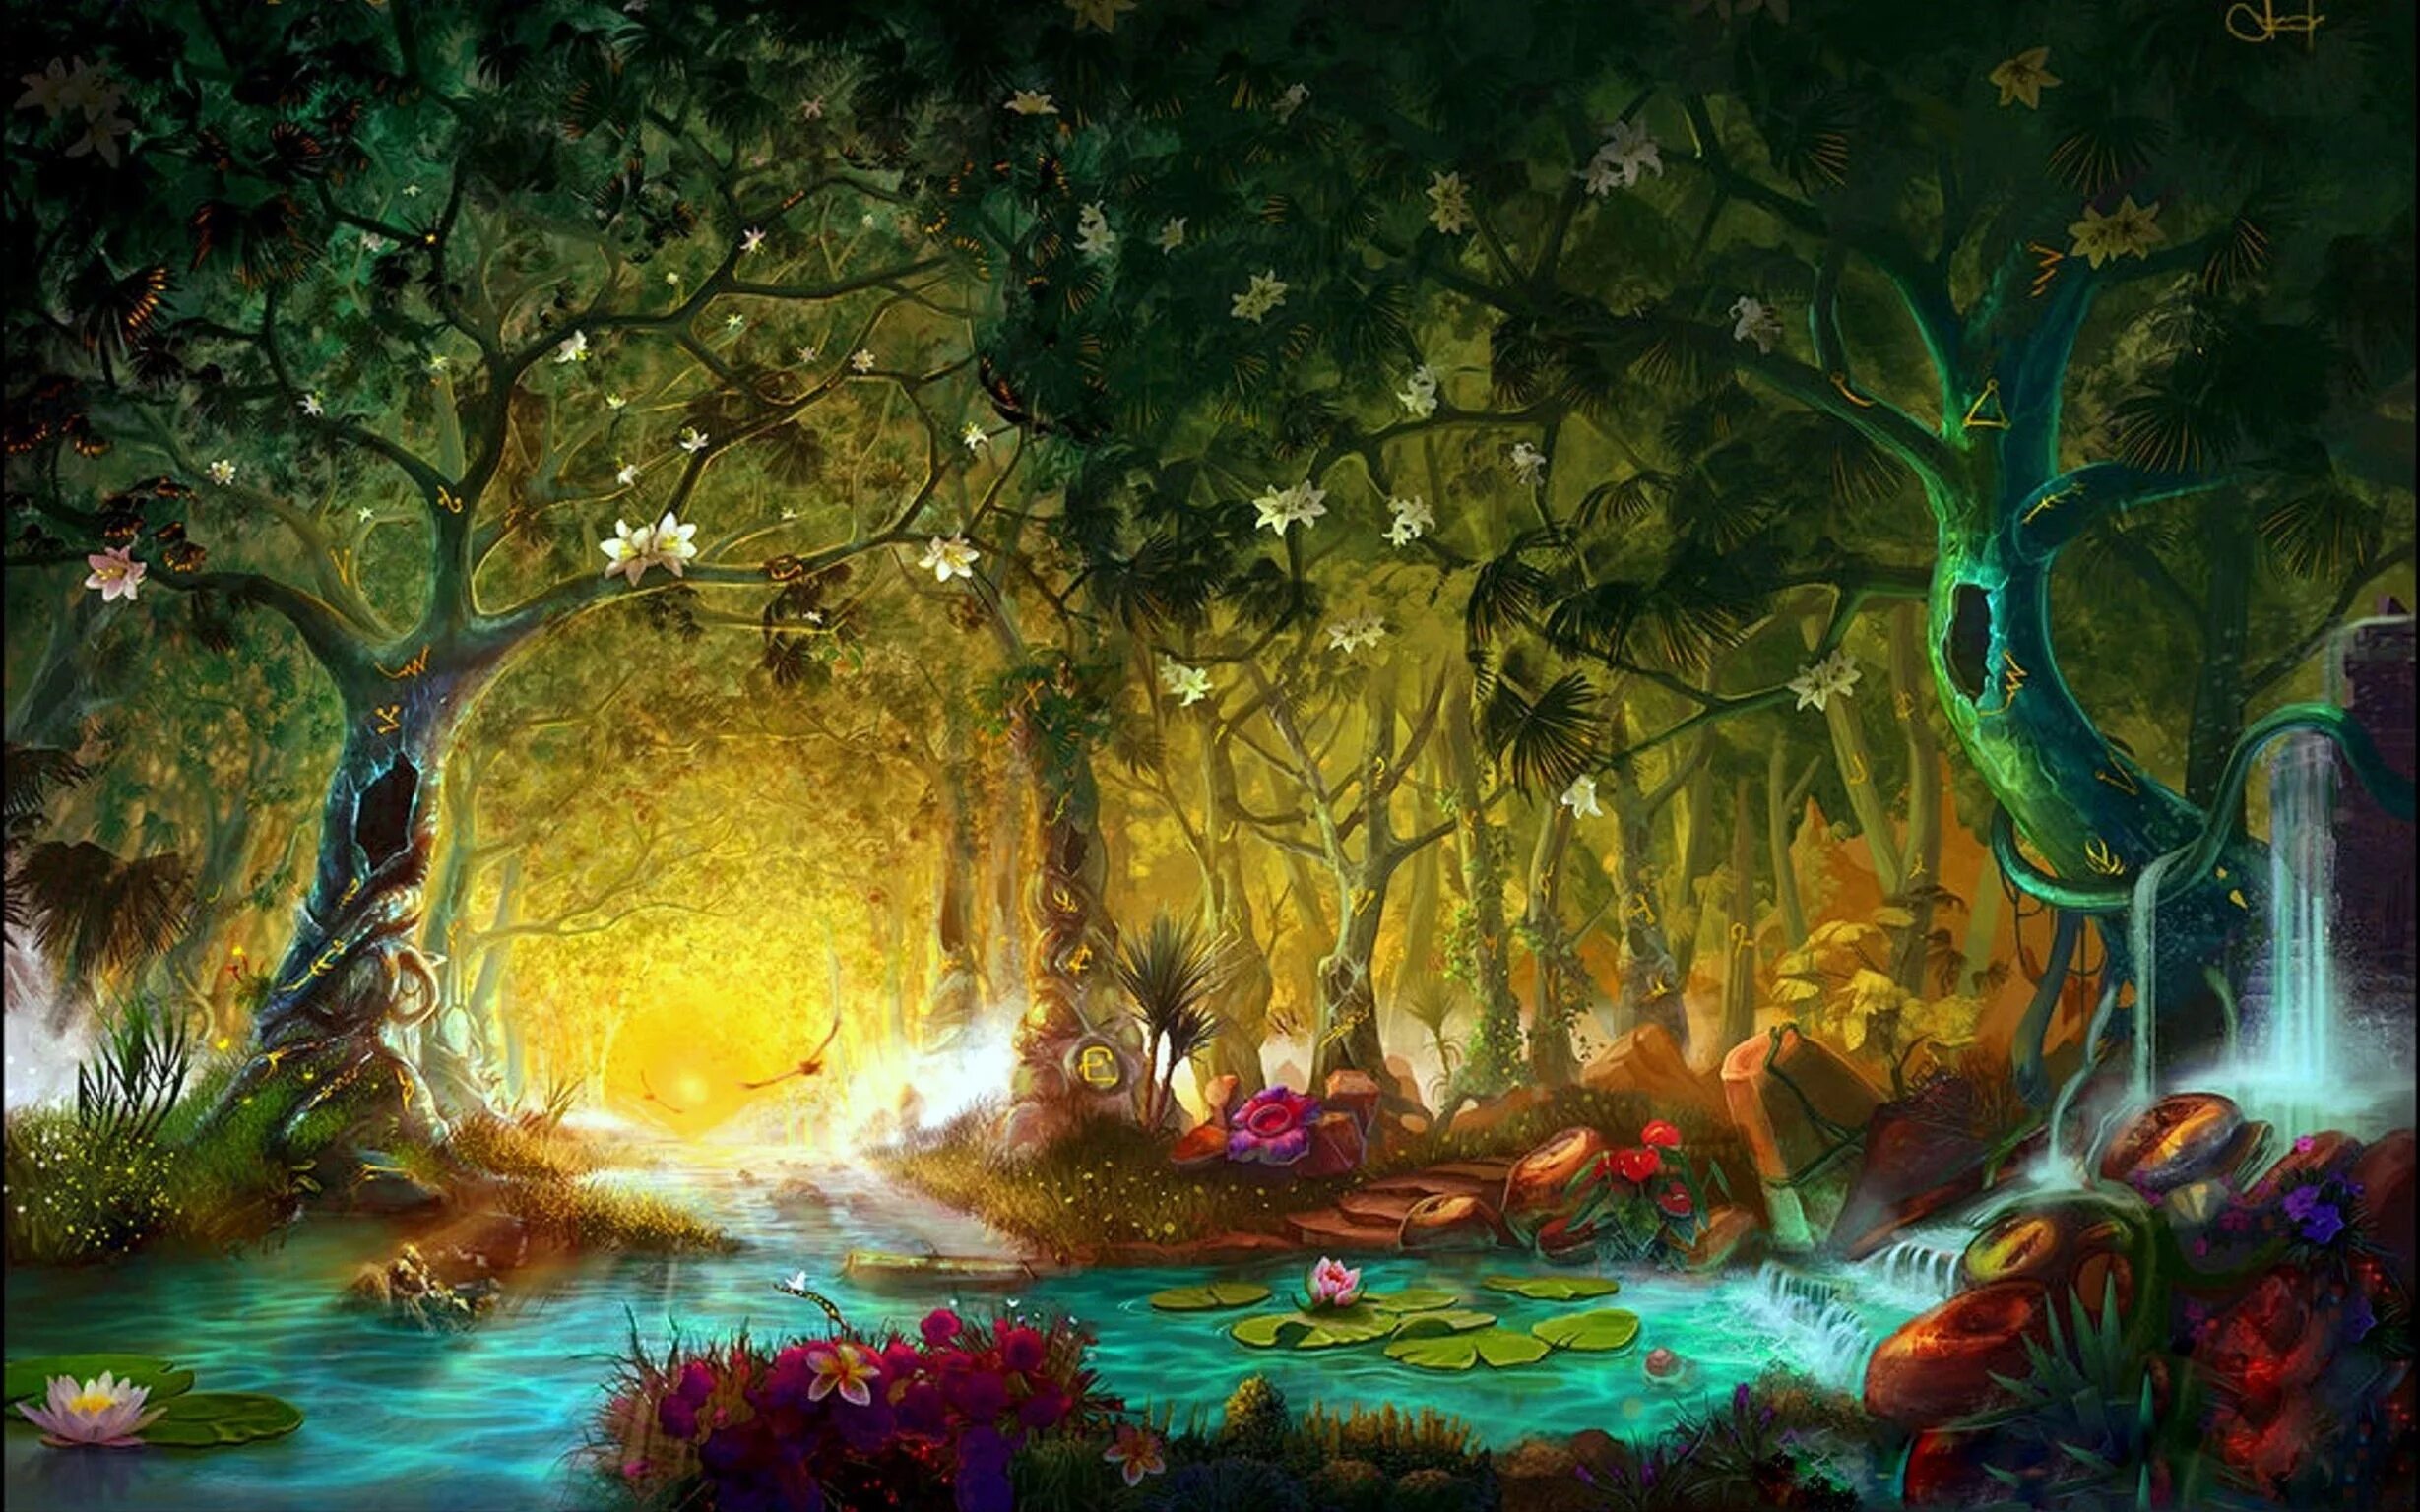 Зачарованный лес (чудесный лес) (1986). «Зачарованный лес» («Enchanted Forest») Поллак. Сказочный лес. Волшебный лес. Волшебный мир заколдованной